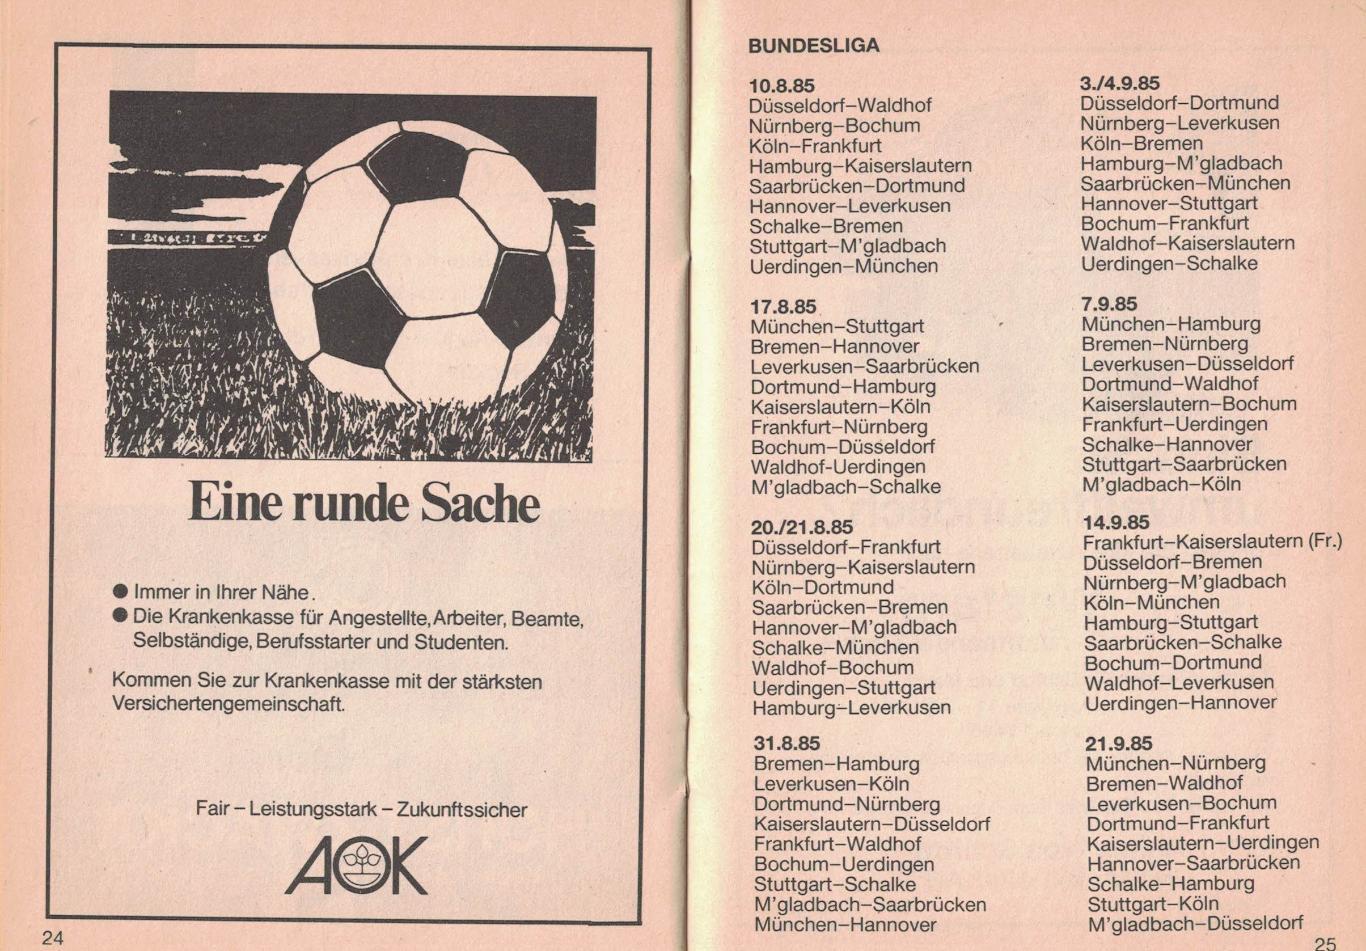 Чемпионат ФРГ 1985/1986. Календарь игр 1 круг 3